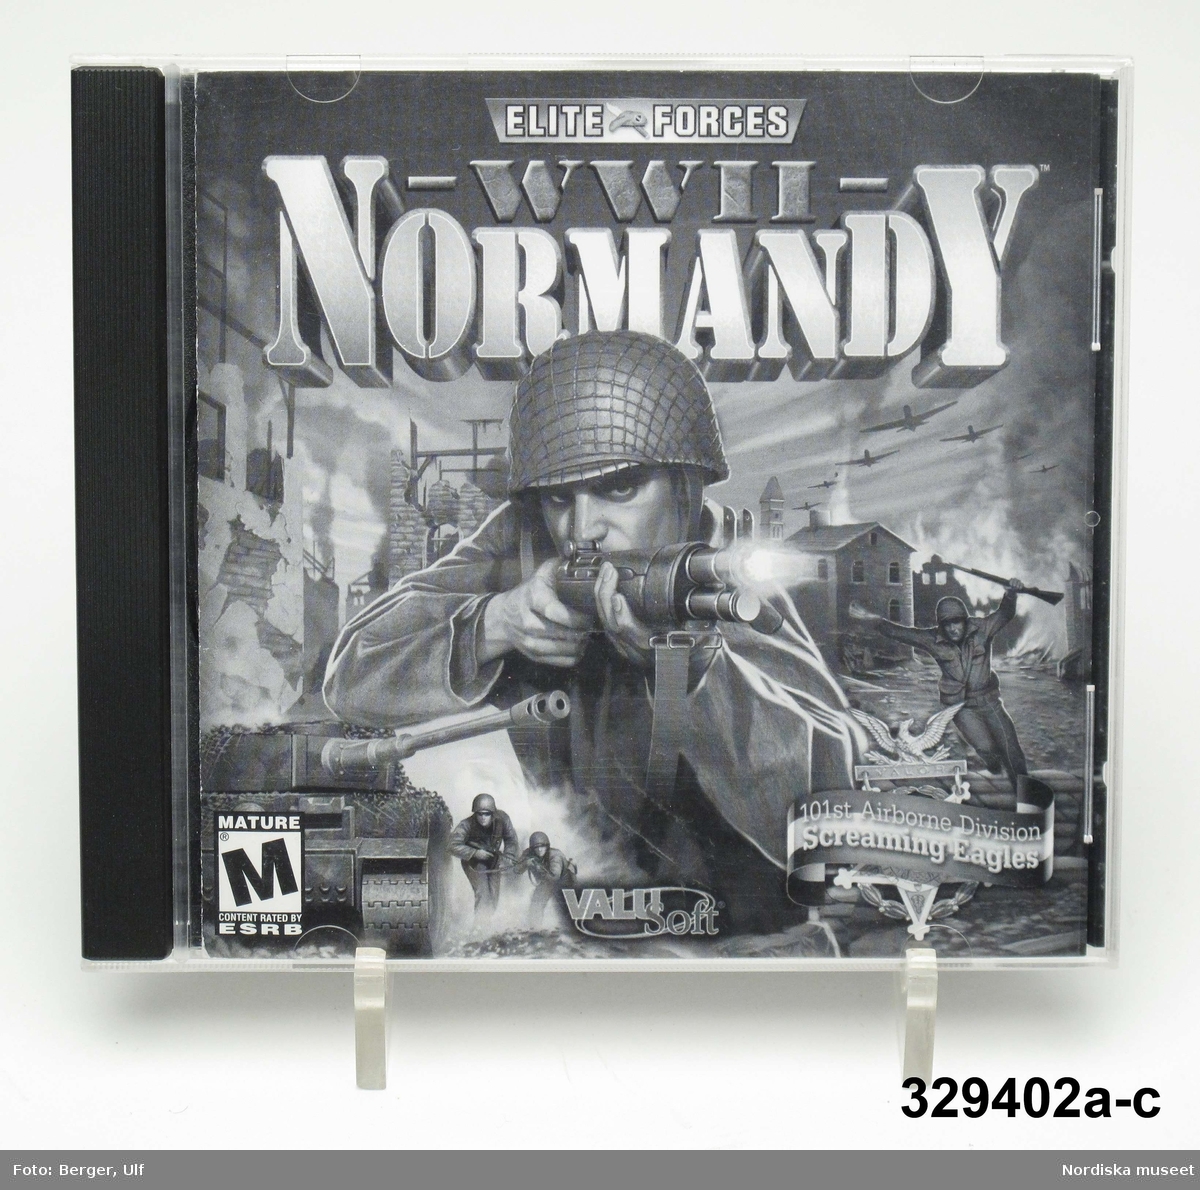 Datorspel/TV-spel (a-c) i form av CD-skiva i plastfodral och med skriftlig instruktion i fodralet. Spelets titel är "ELITE FORCES WW II NORMANDY" och handlar om en miliär landstigningsoperation under andra världkriget i Normandy, Frankrike 1944.
Spelet är tillverkat och distribuerat av Valu Soft. inc som är en division inom THQ (Toy Headquaters) Inc. Utgående från copyright började spelet sannolikt tillverkas från 2001.
Spelet är märkt M / Mature/ alltså för vuxna.

a) CD-Skiva.
b) Plastfodral
c) Instruktionsblad.

Givaren (född 1996) lämnar följande upplysningar om föremålet: Han har spelat det fram till nu dvs 2008 men anger inte från när. Spelet som heter "Normandy" är ett krigsspel och går ut på att skjuta ner fiender; i detta fall "nazister"/tyska soldater.  

Föremålet ingår i projektet "Barn tar plats". Se dokumentation i arkivet D455.
/Ulf Hamilton 2008-05-22